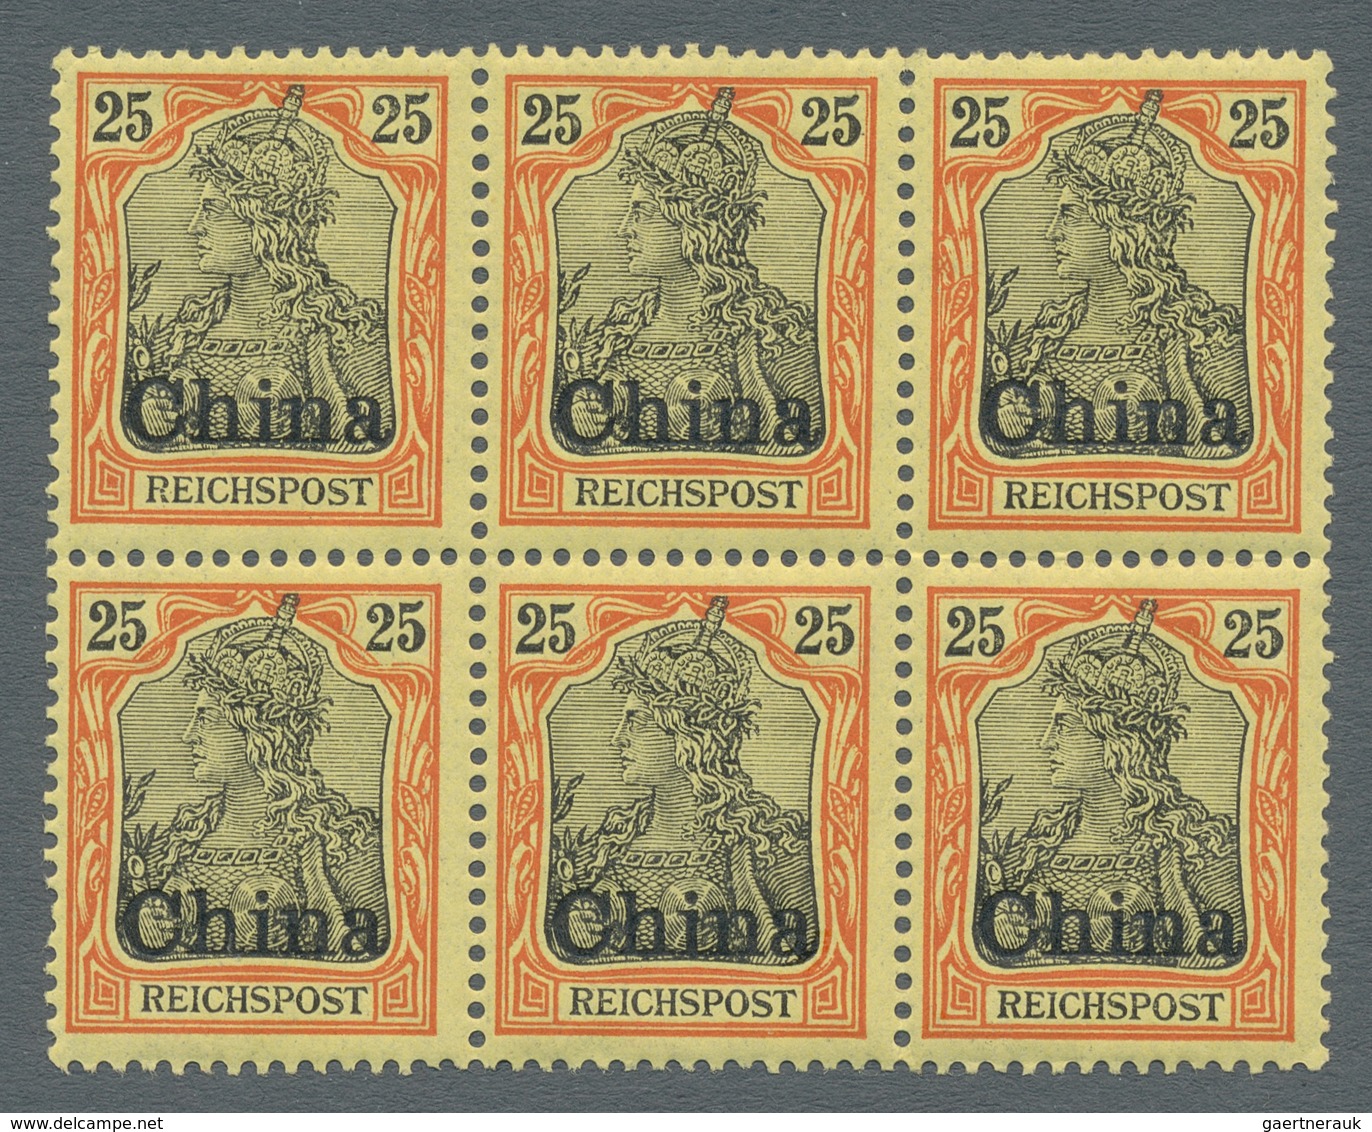 Deutsche Post In China: 1901, 25 Pfg. Germania Reichspost Mit Aufdruck CHINA Als Sechserblock (mittl - Cina (uffici)